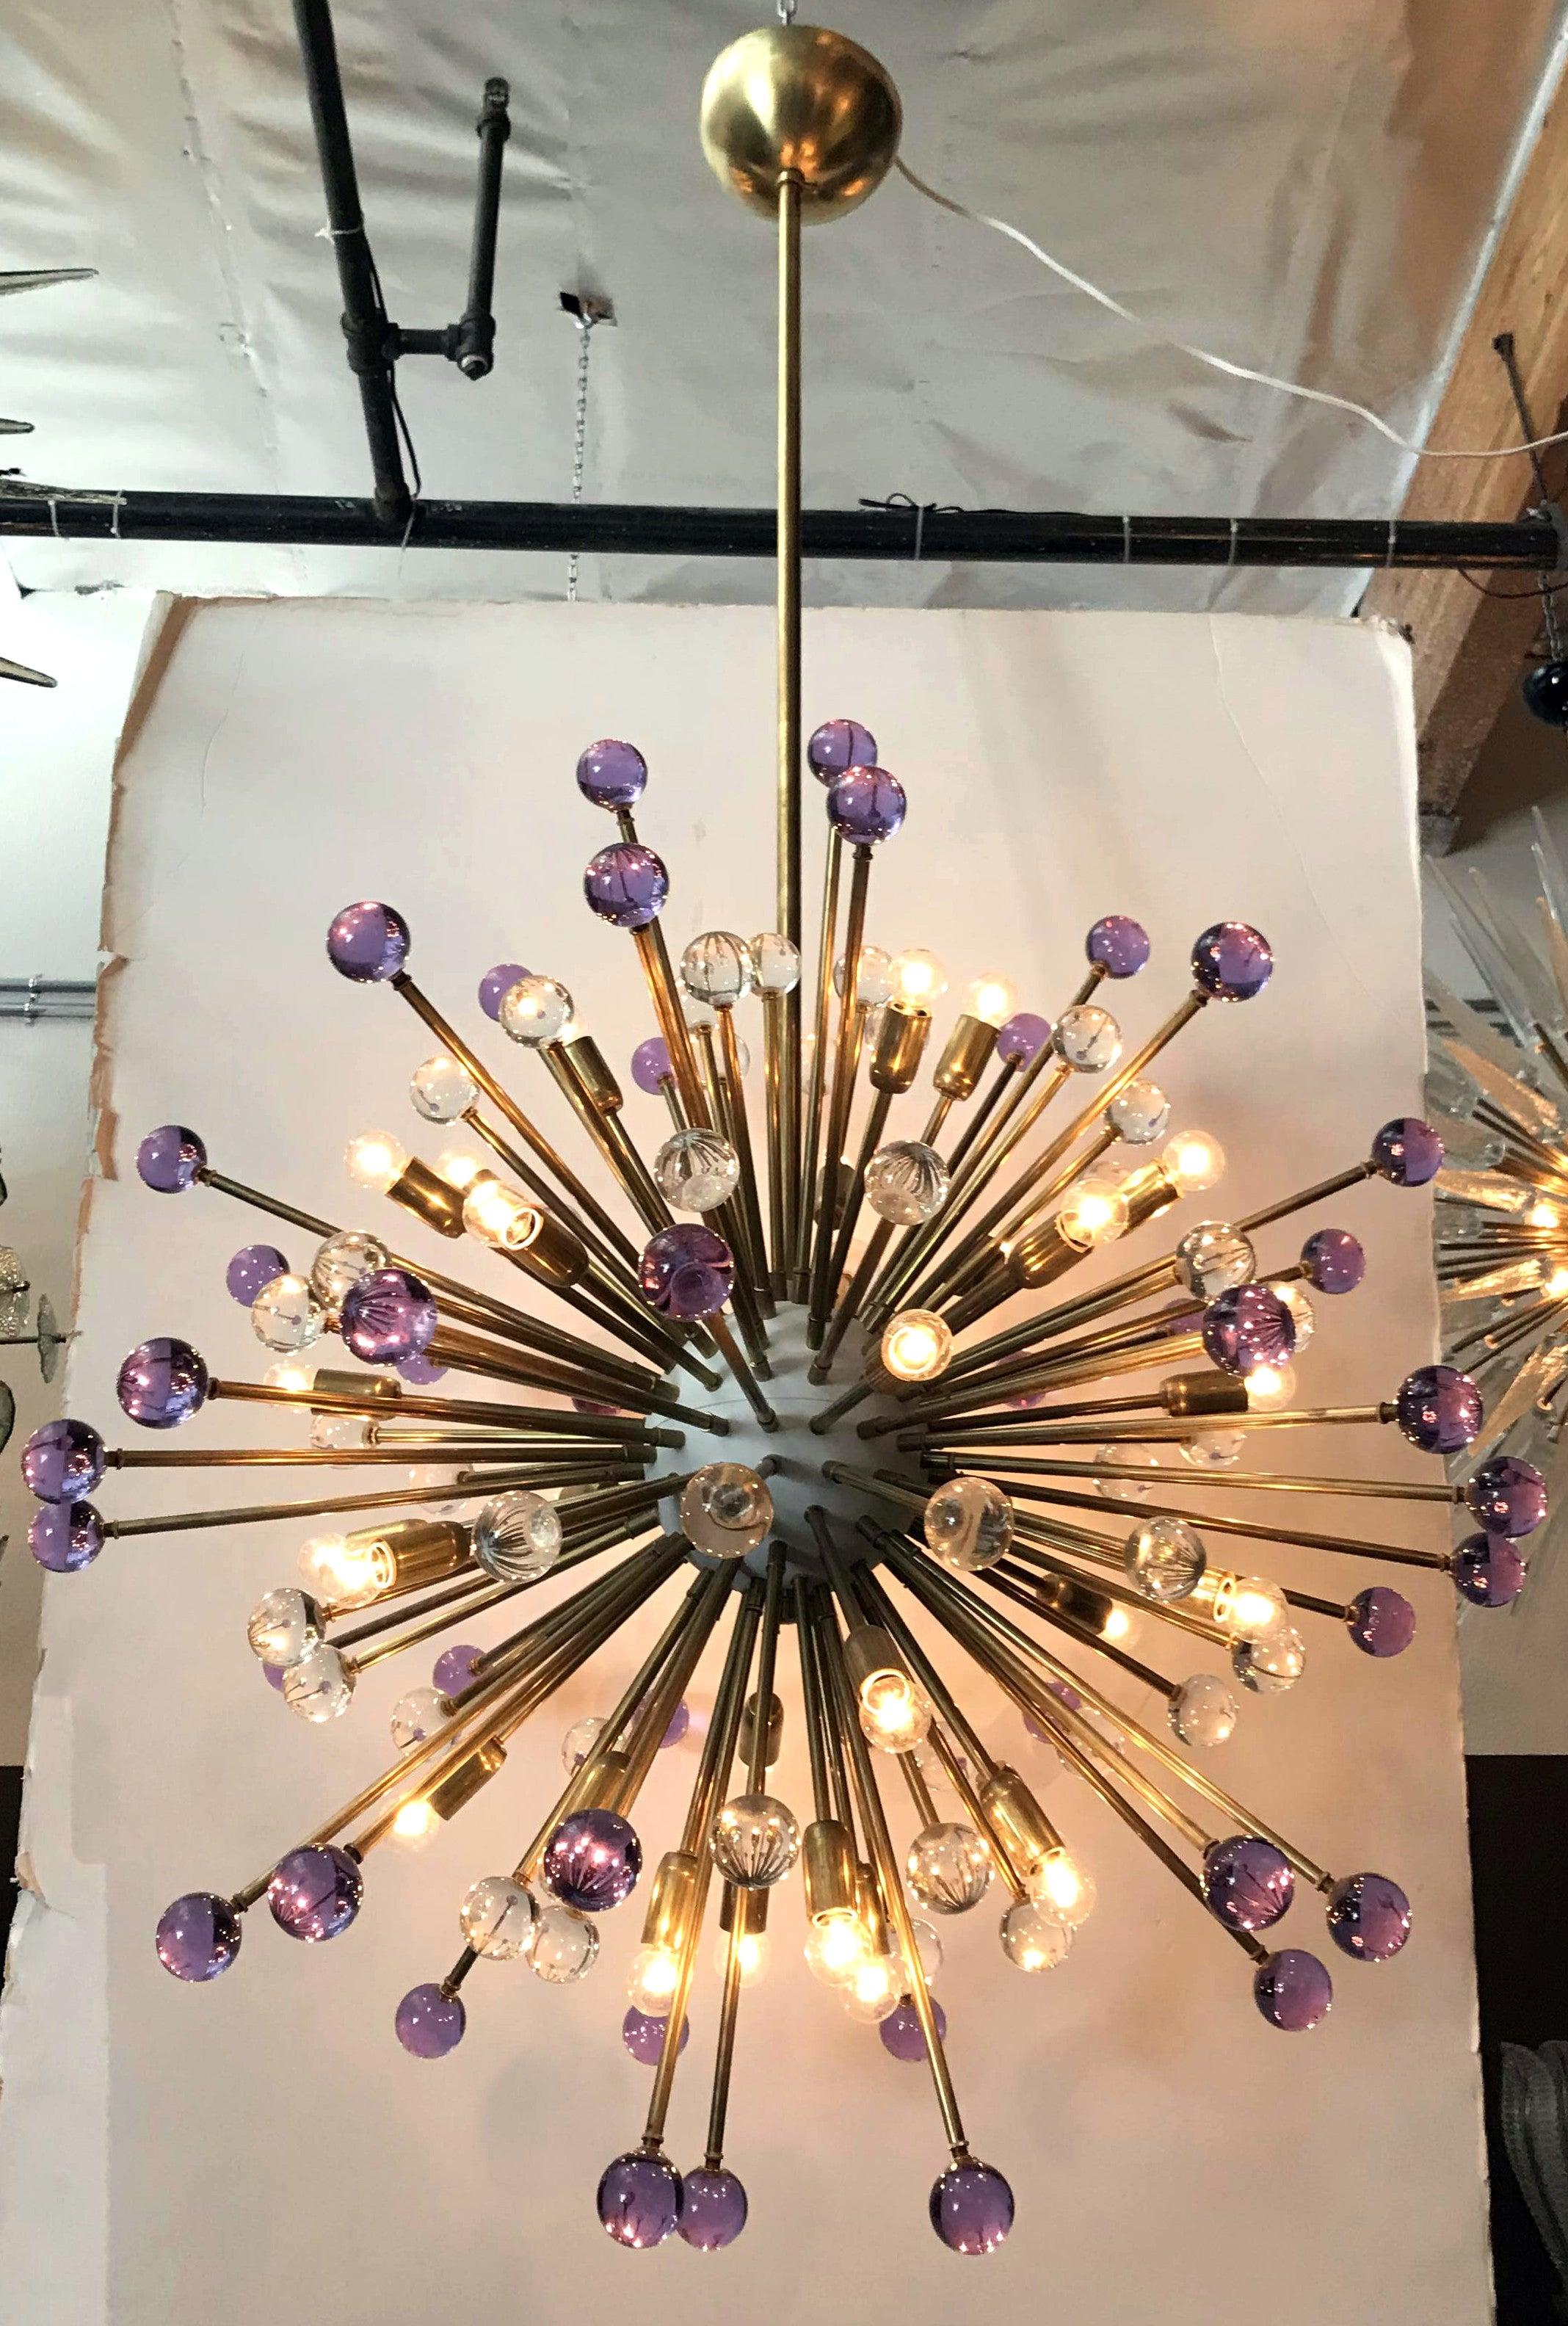 Moderne italienische Sputnik-Kronleuchter mit mundgeblasenen violetten und klaren Muranoglaskugeln, montiert auf natürlichen Messingrahmen mit weiß emailliertem Zentrum / Entworfen von Fabio Bergomi für Fabio Ltd / Hergestellt in Italien
30 Leuchten